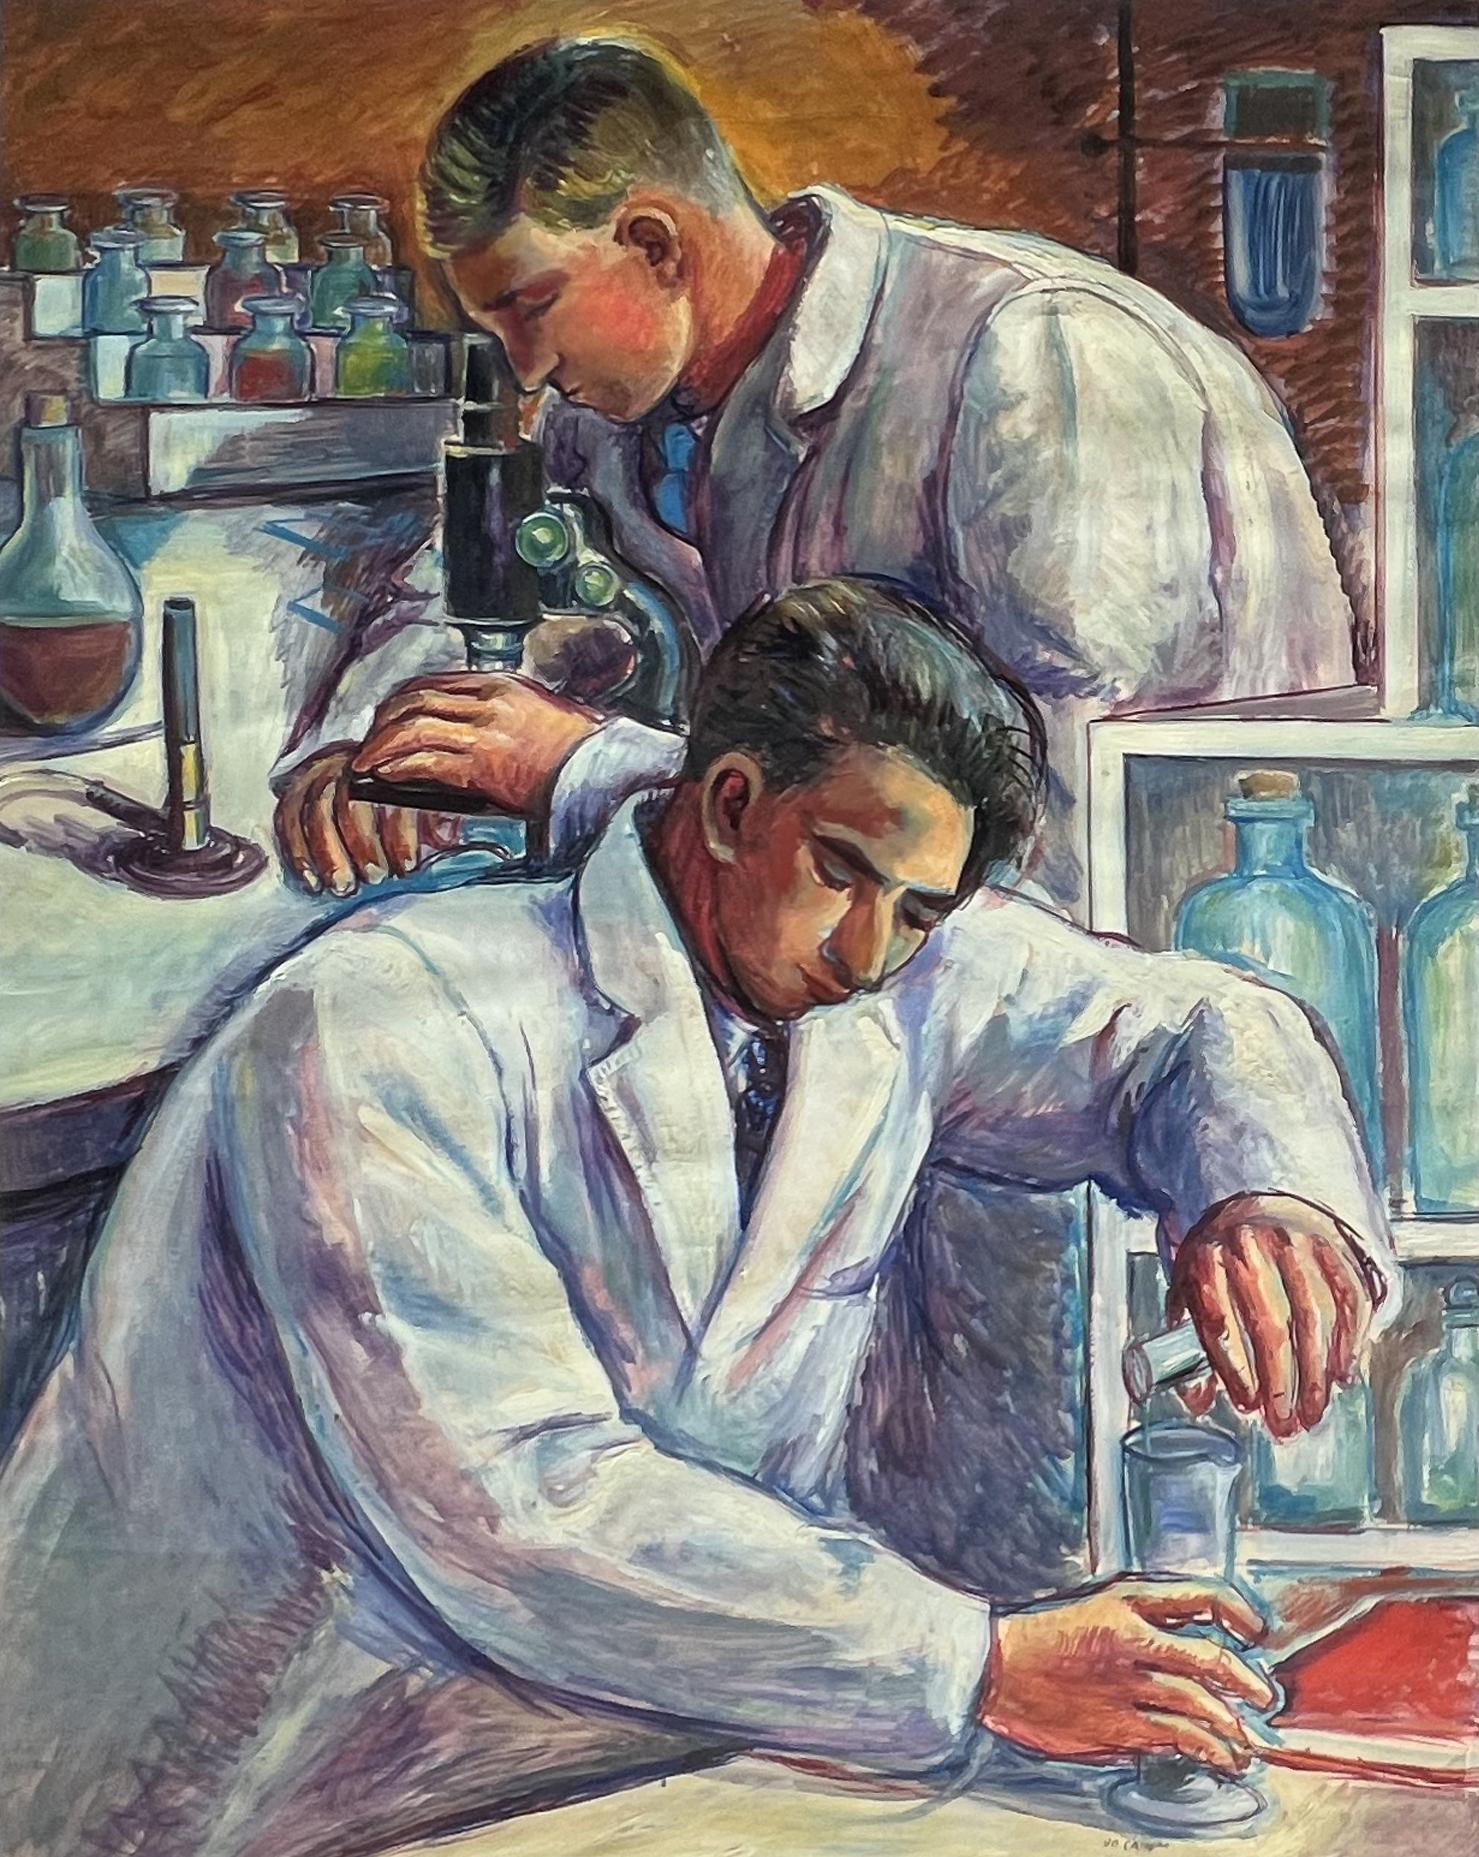 Chemistes américains du milieu du 20e siècle, réalisme social moderne, peinture murale scientifique de la WPA